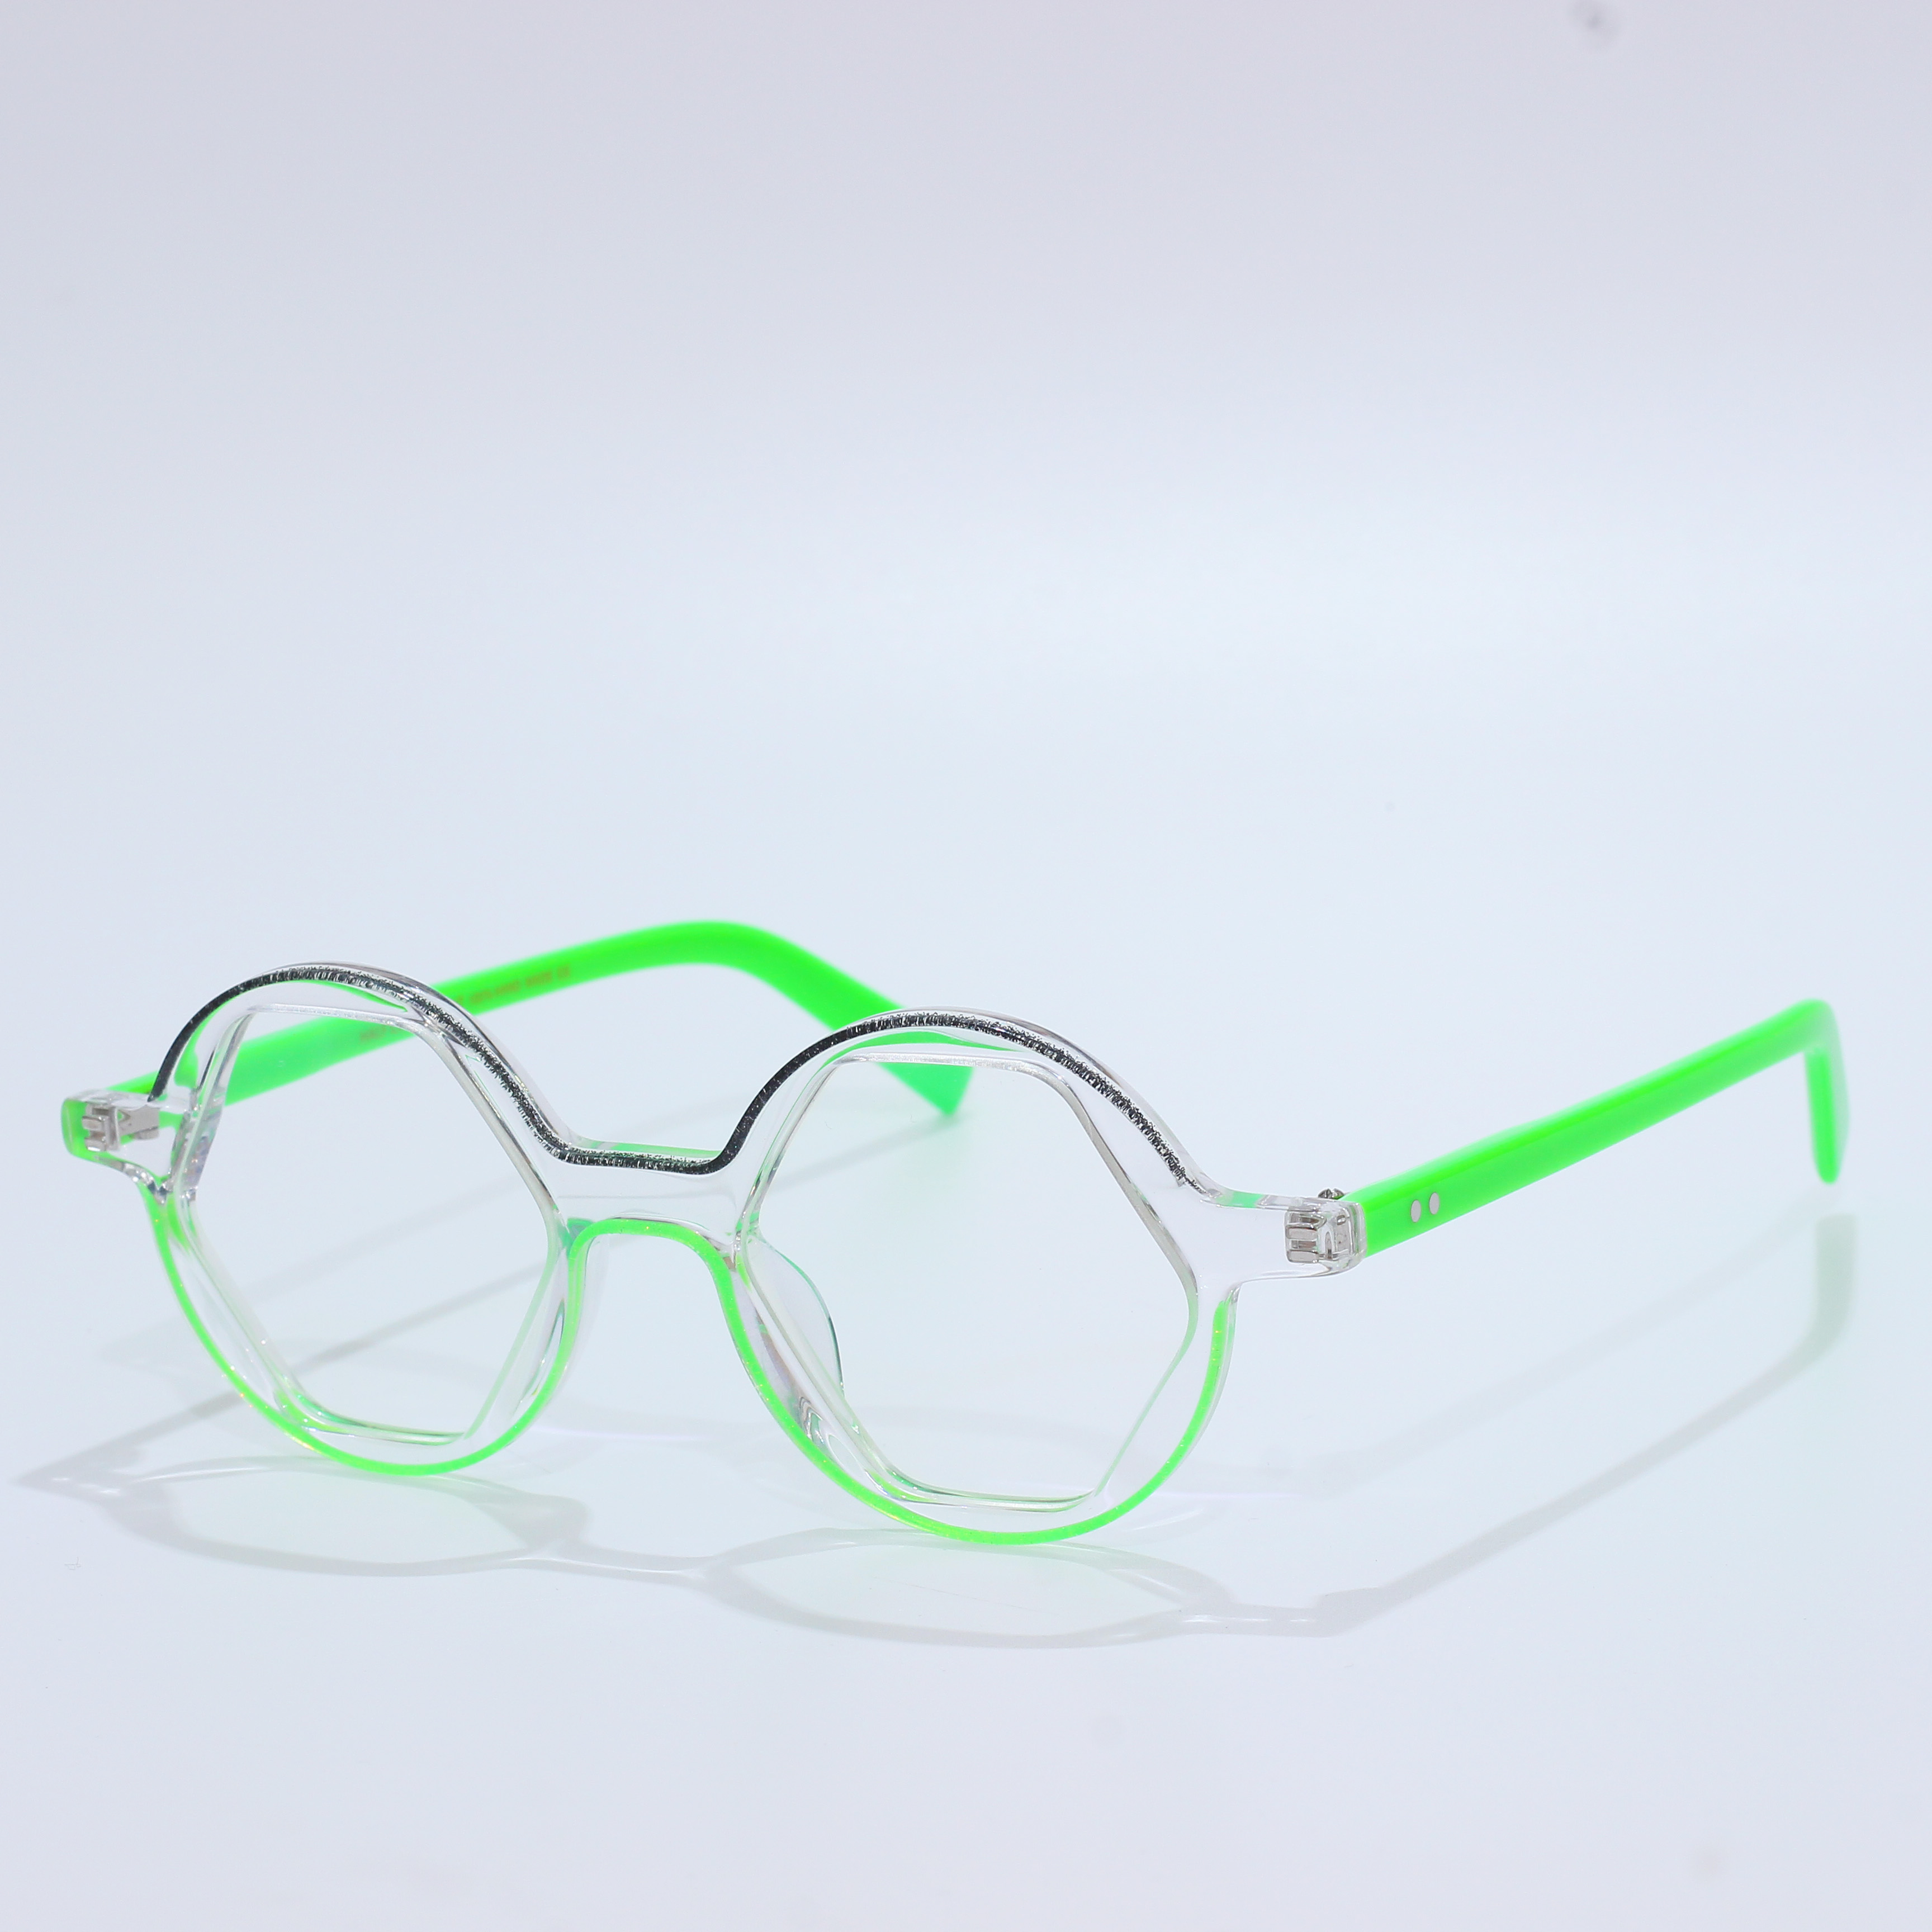 एसीटेट Mazzucchelli ब्लू लाइट चश्मा चश्मा फ्रेम (4)